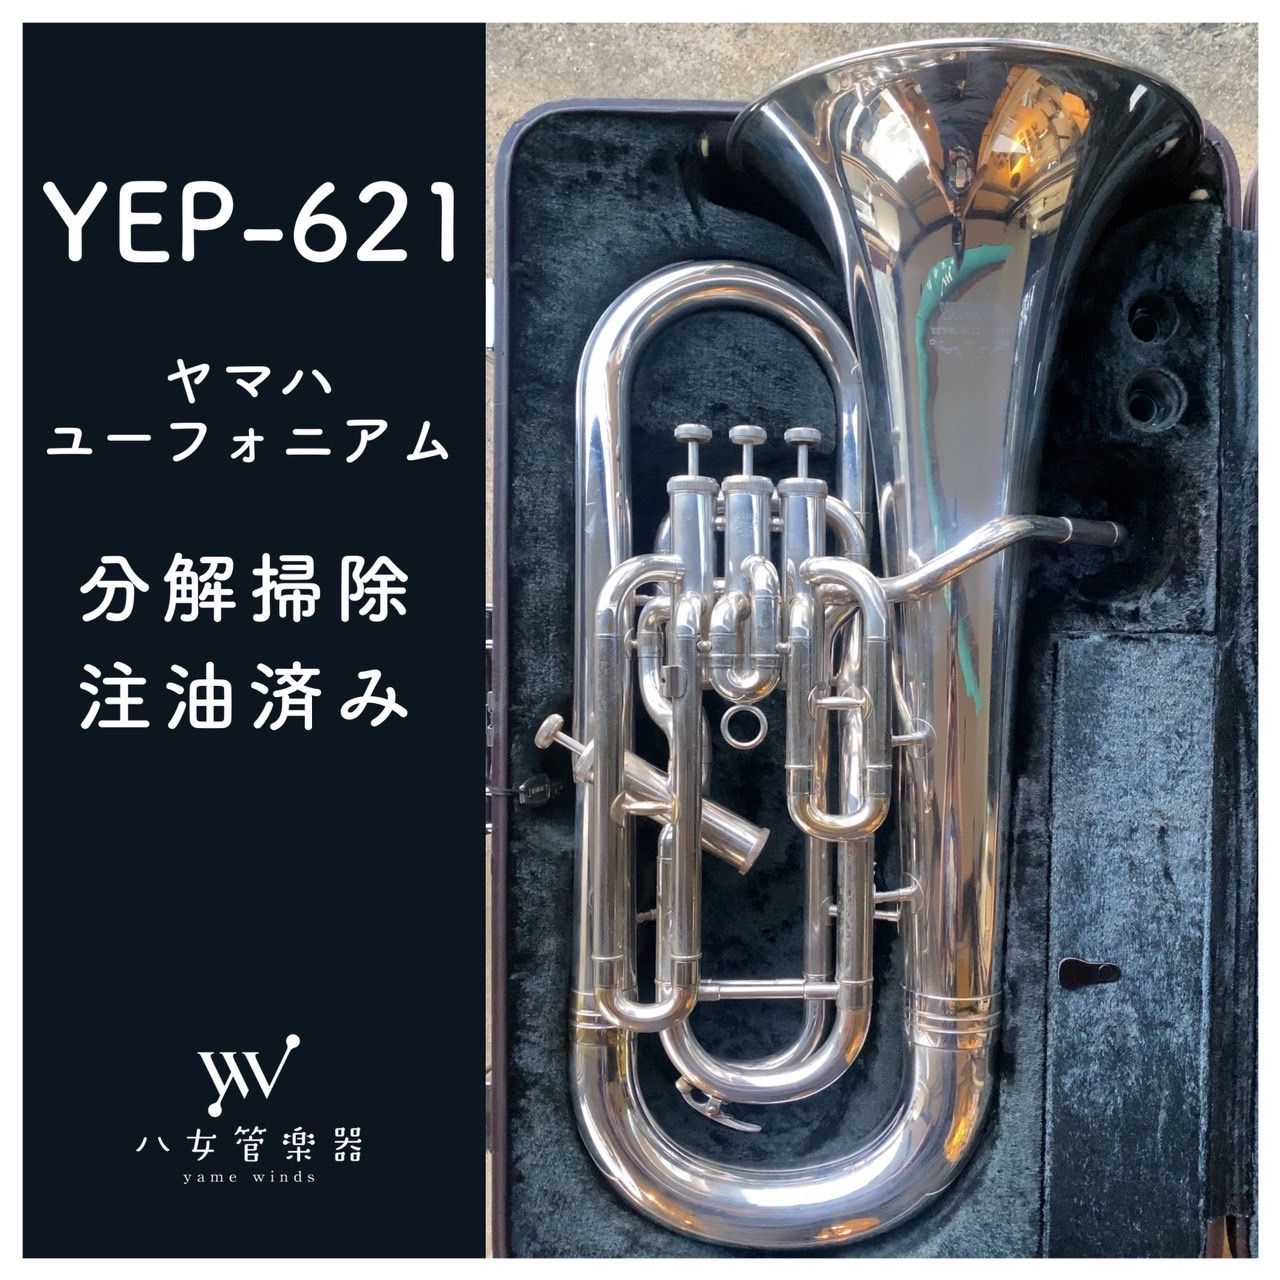 YAMAHA ユーフォニウム YEP-621 銀メッキ - 管楽器・吹奏楽器